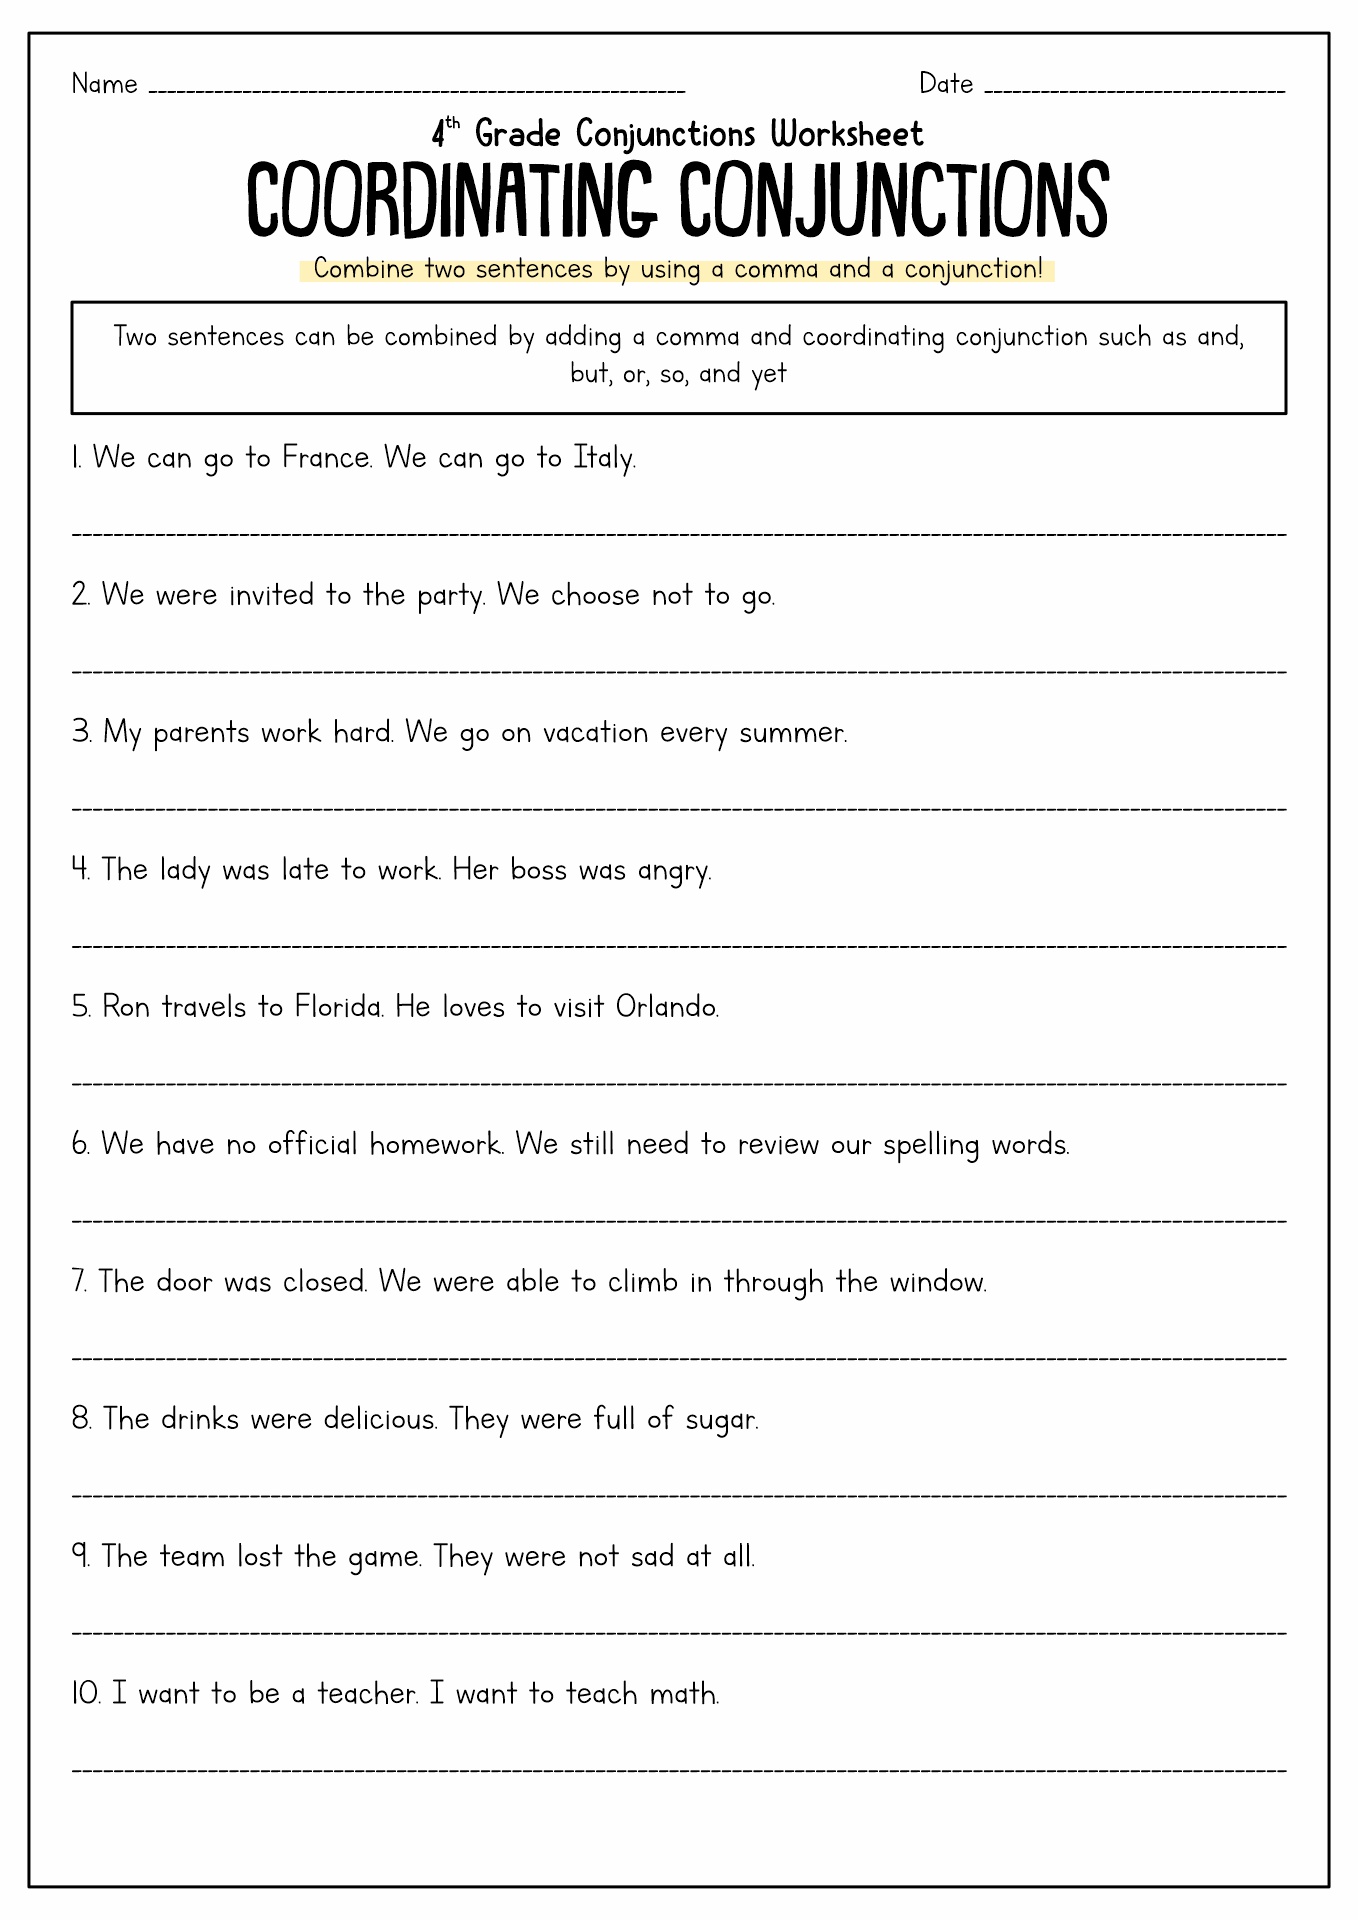 Conjunction Sentences Worksheet Image